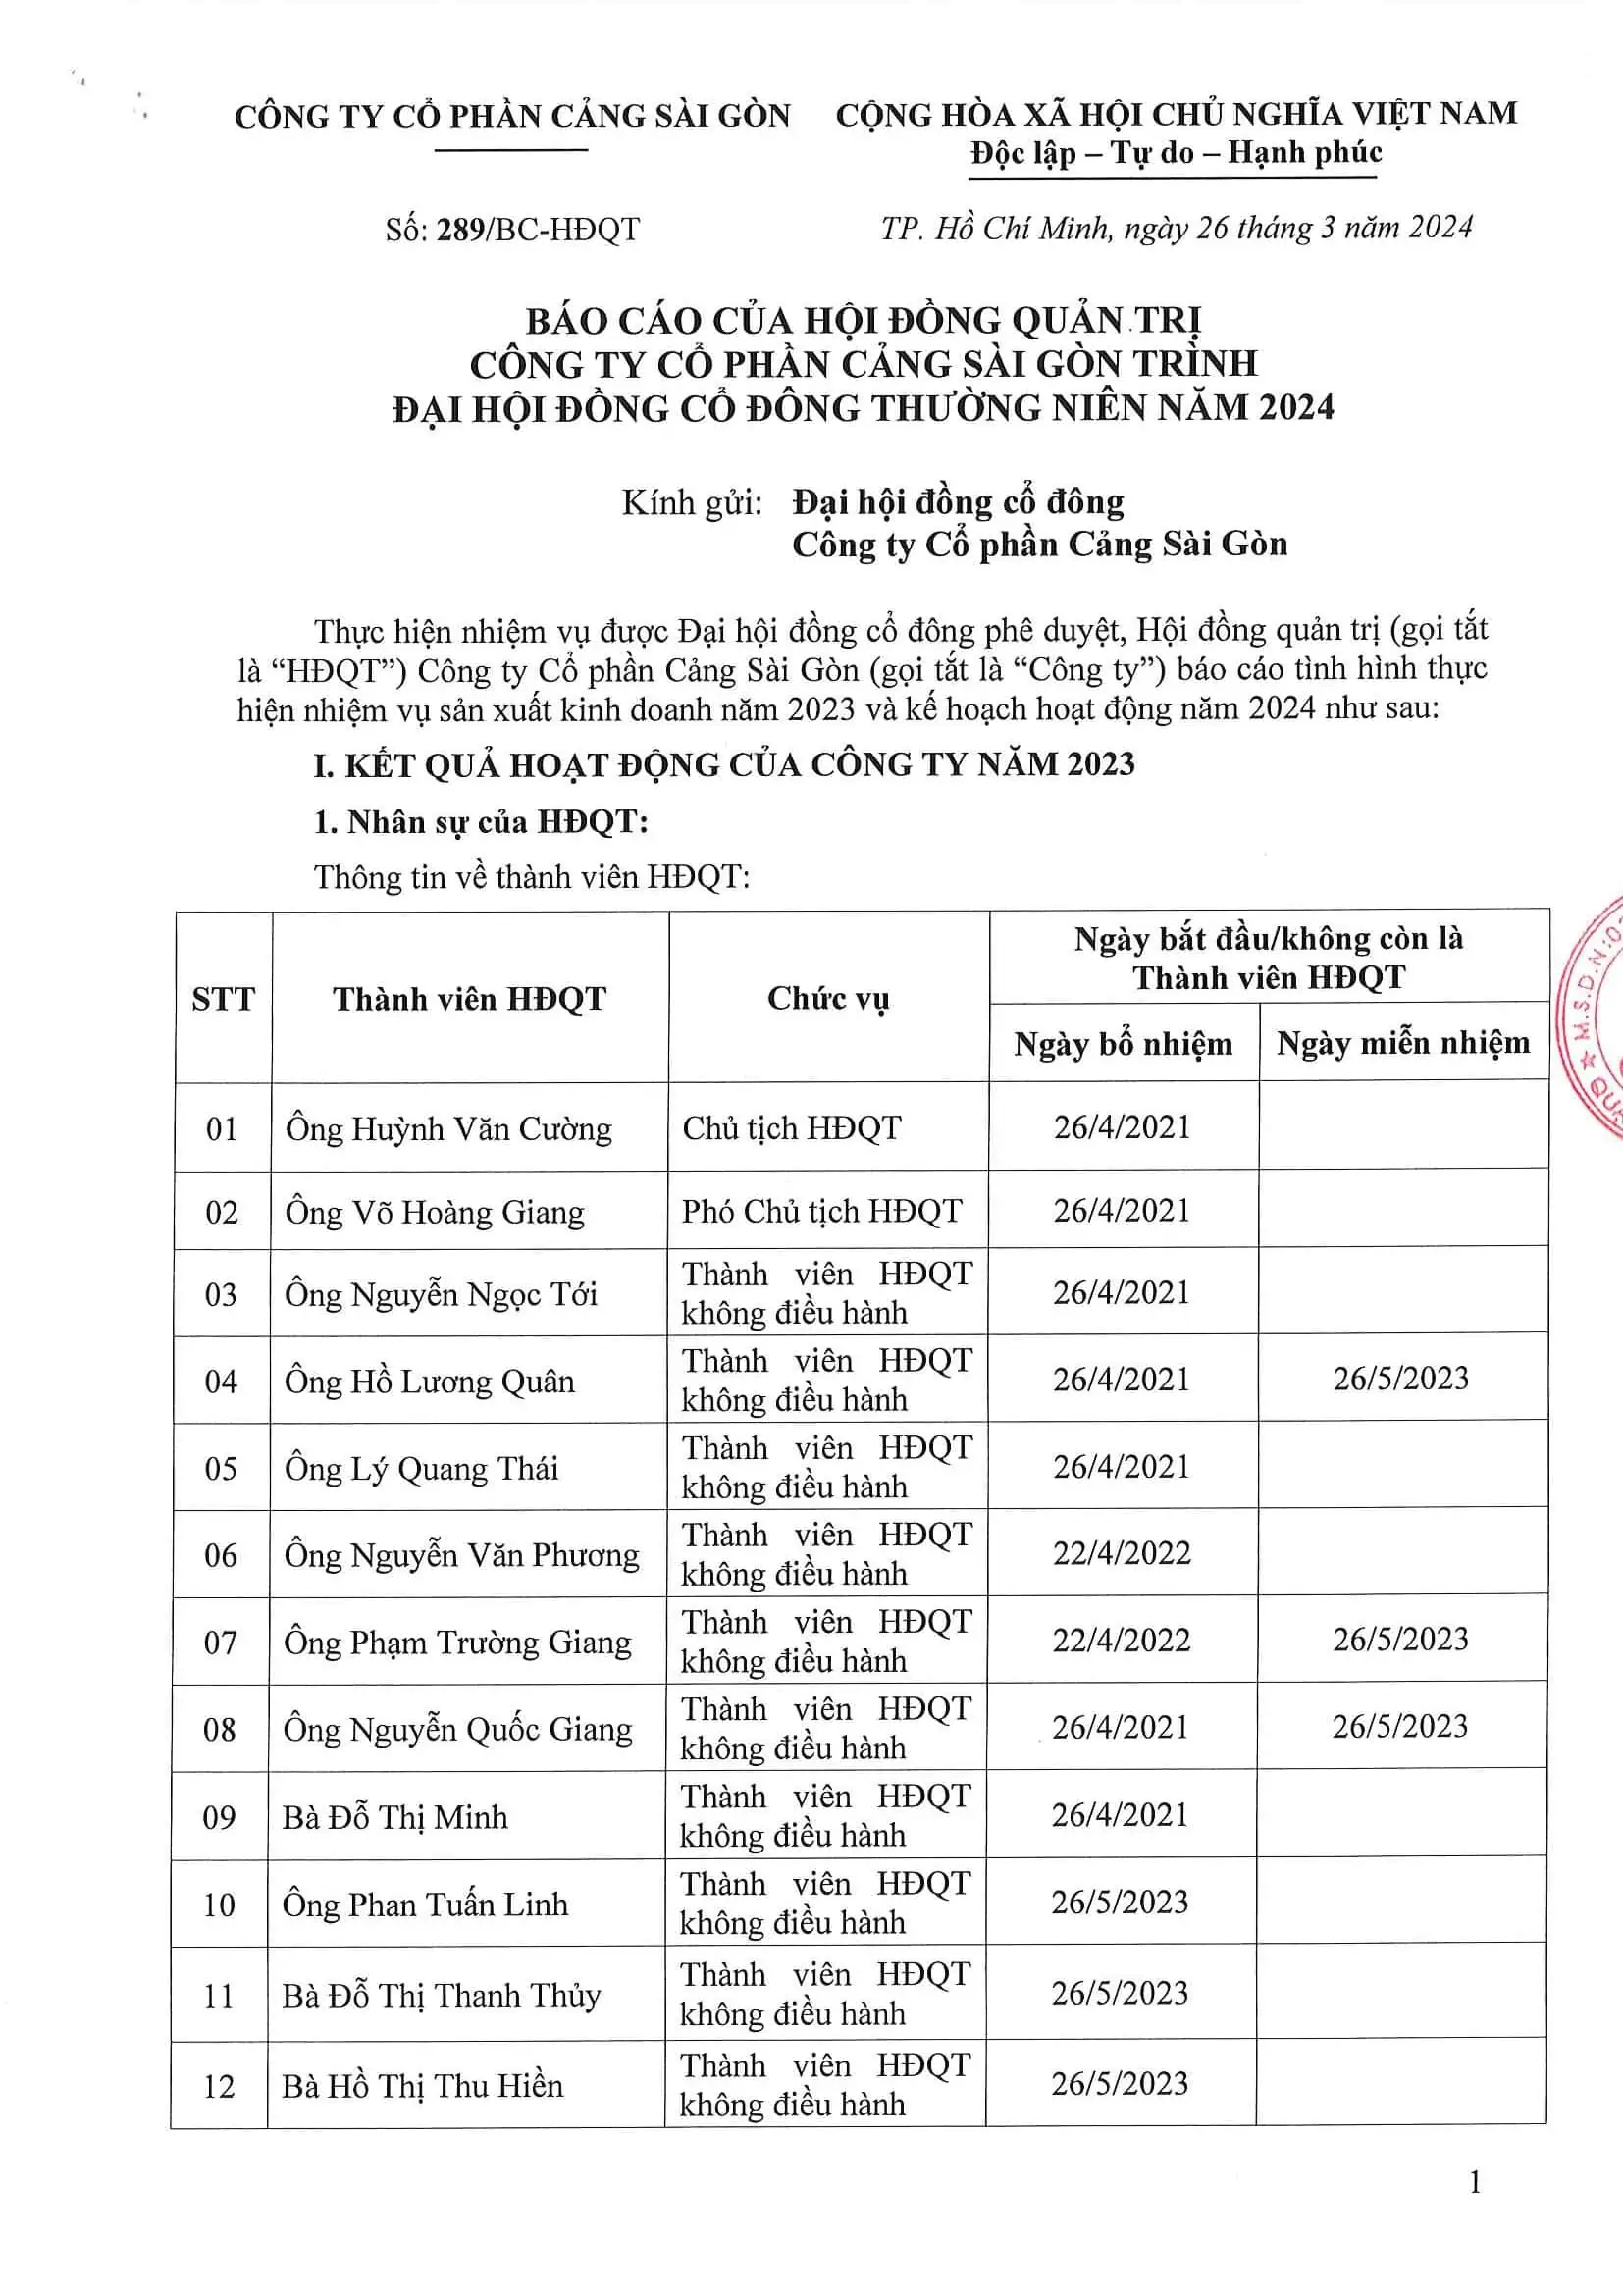 Báo cáo của Hội đồng quản trị Công ty Cổ phần Cảng Sài Gòn trình Đại hội đồng cổ đông thường niên năm 2024